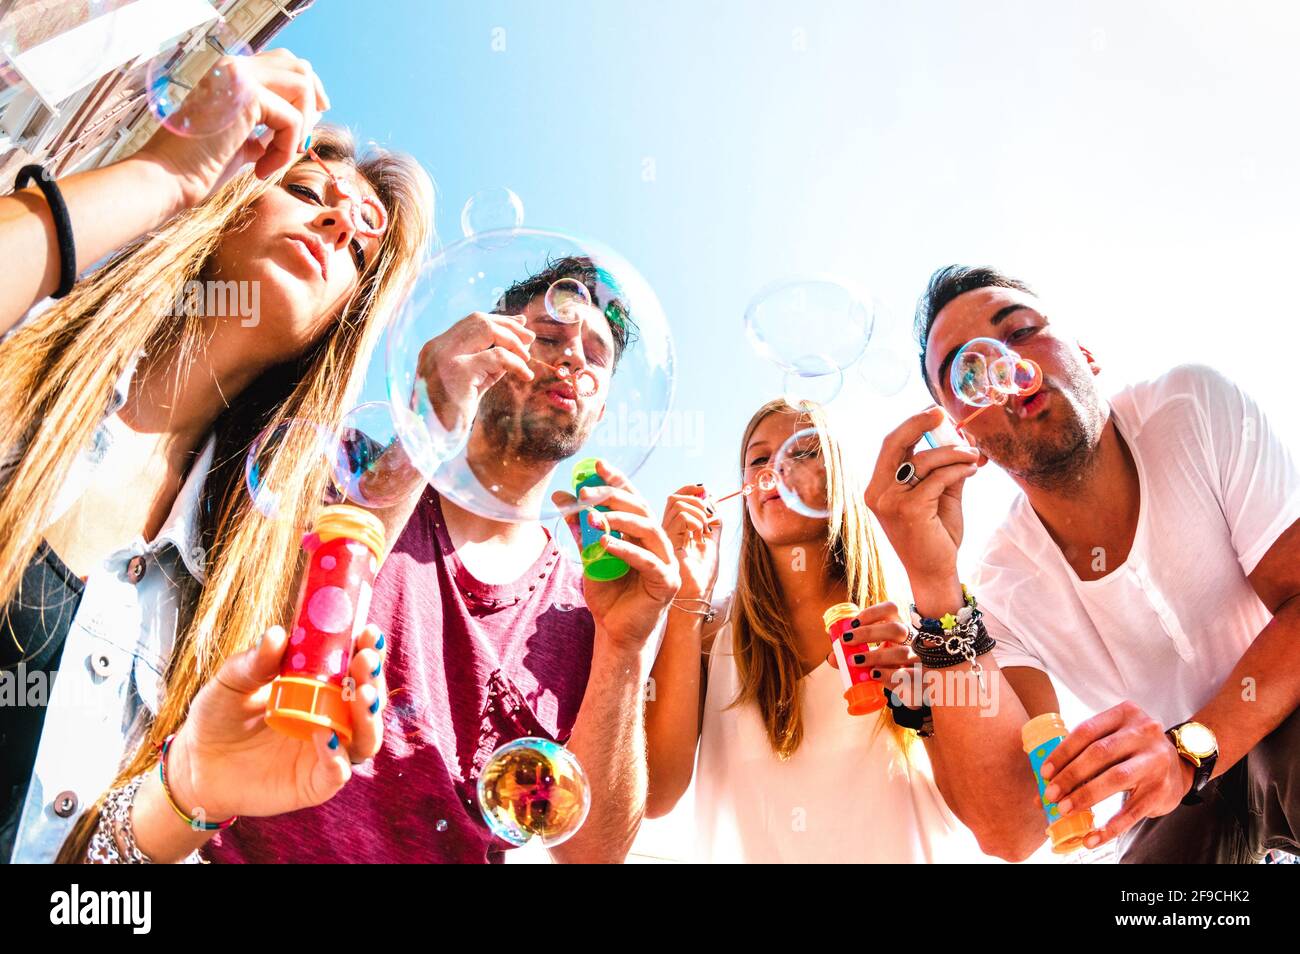 Junge Freunde, die im Frühling mit Seifenblasen spielen Pausenzeit - Freundschaftskonzept und echter Lebensstil mit Glückliche, tausendelfmütigen Menschen Stockfoto